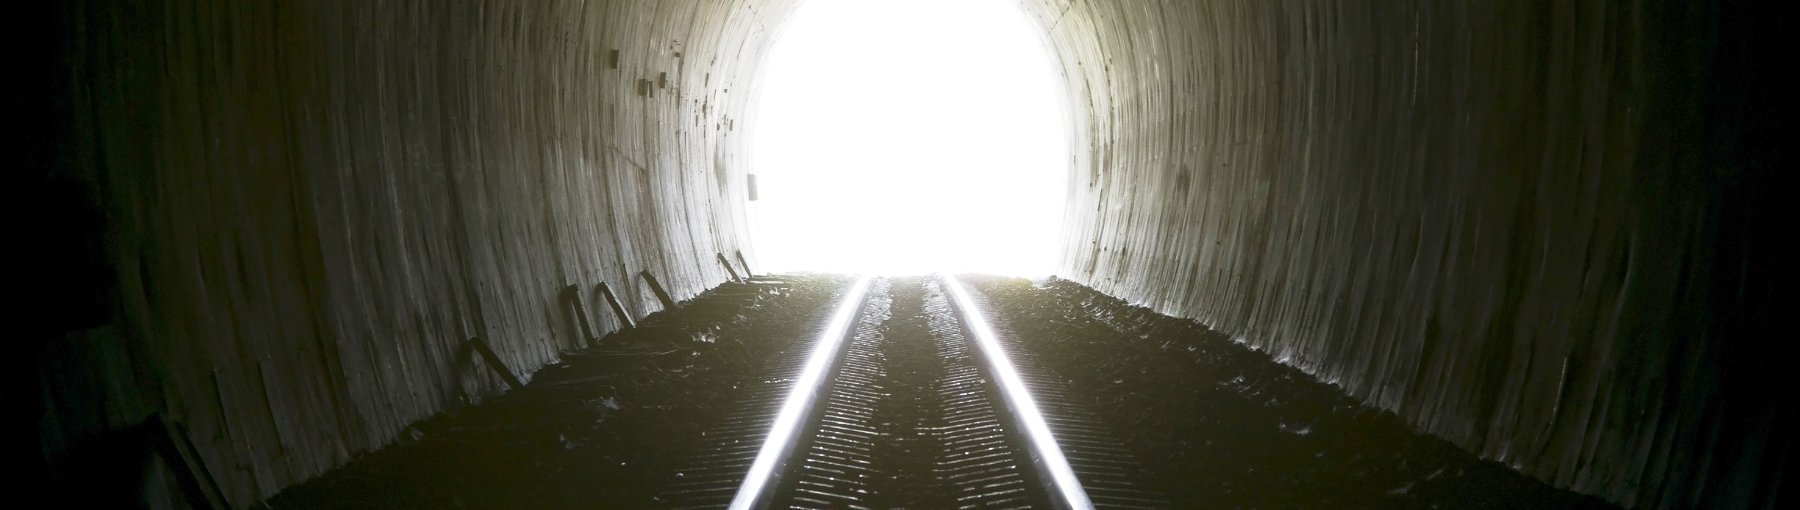 W Polsce będzie łatwiej budować tunele kolejowe? Fot. Konmesa/Shutterstock